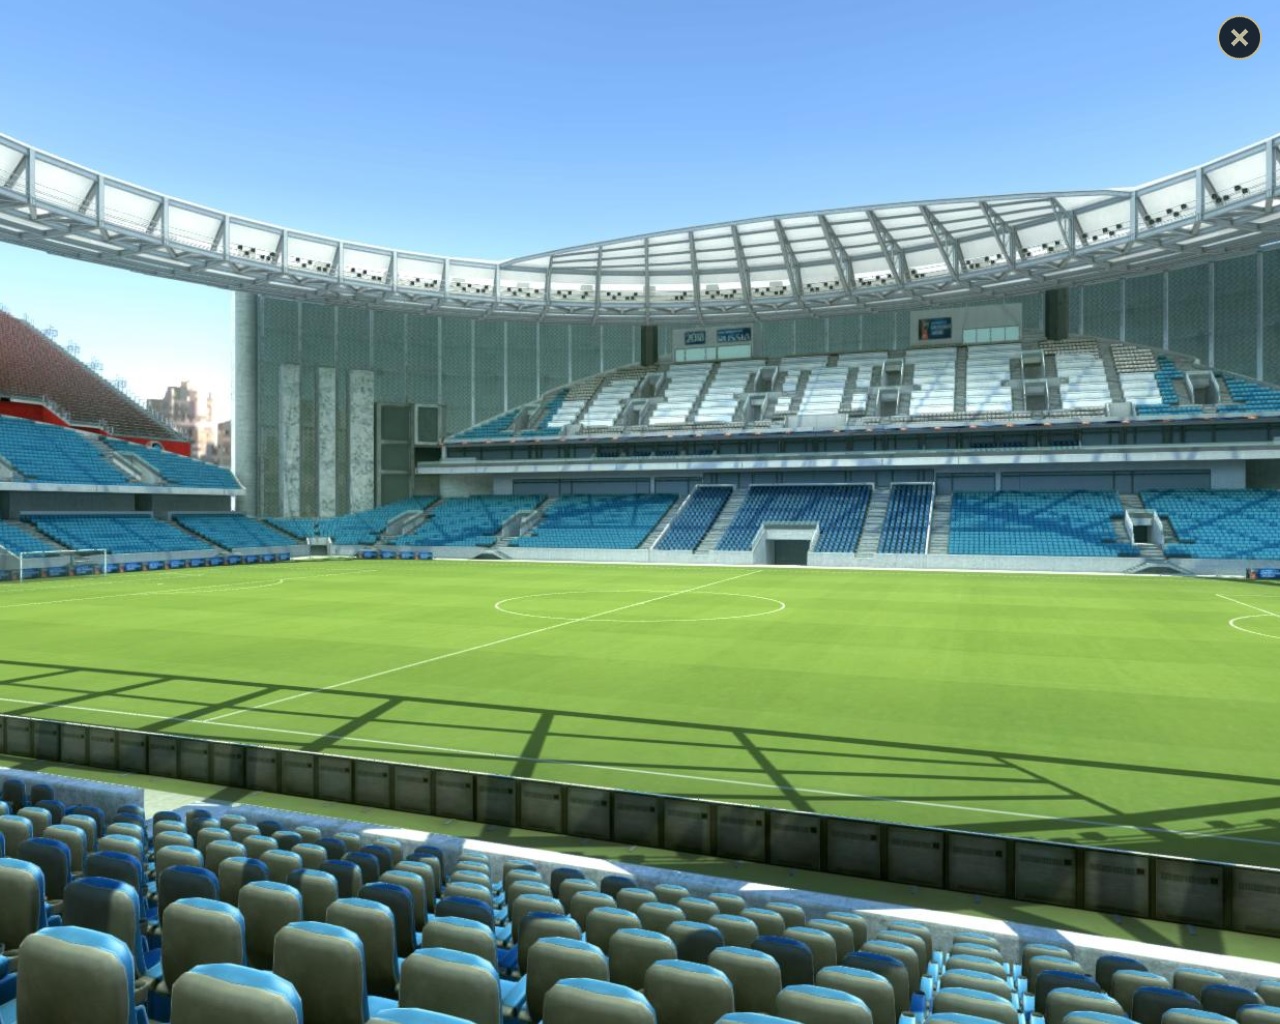 Разглядываем стадион и выбираем себе места! FIFA показала, как будет выглядеть «Екатеринбург Арена» в 2018 году - Фото 8